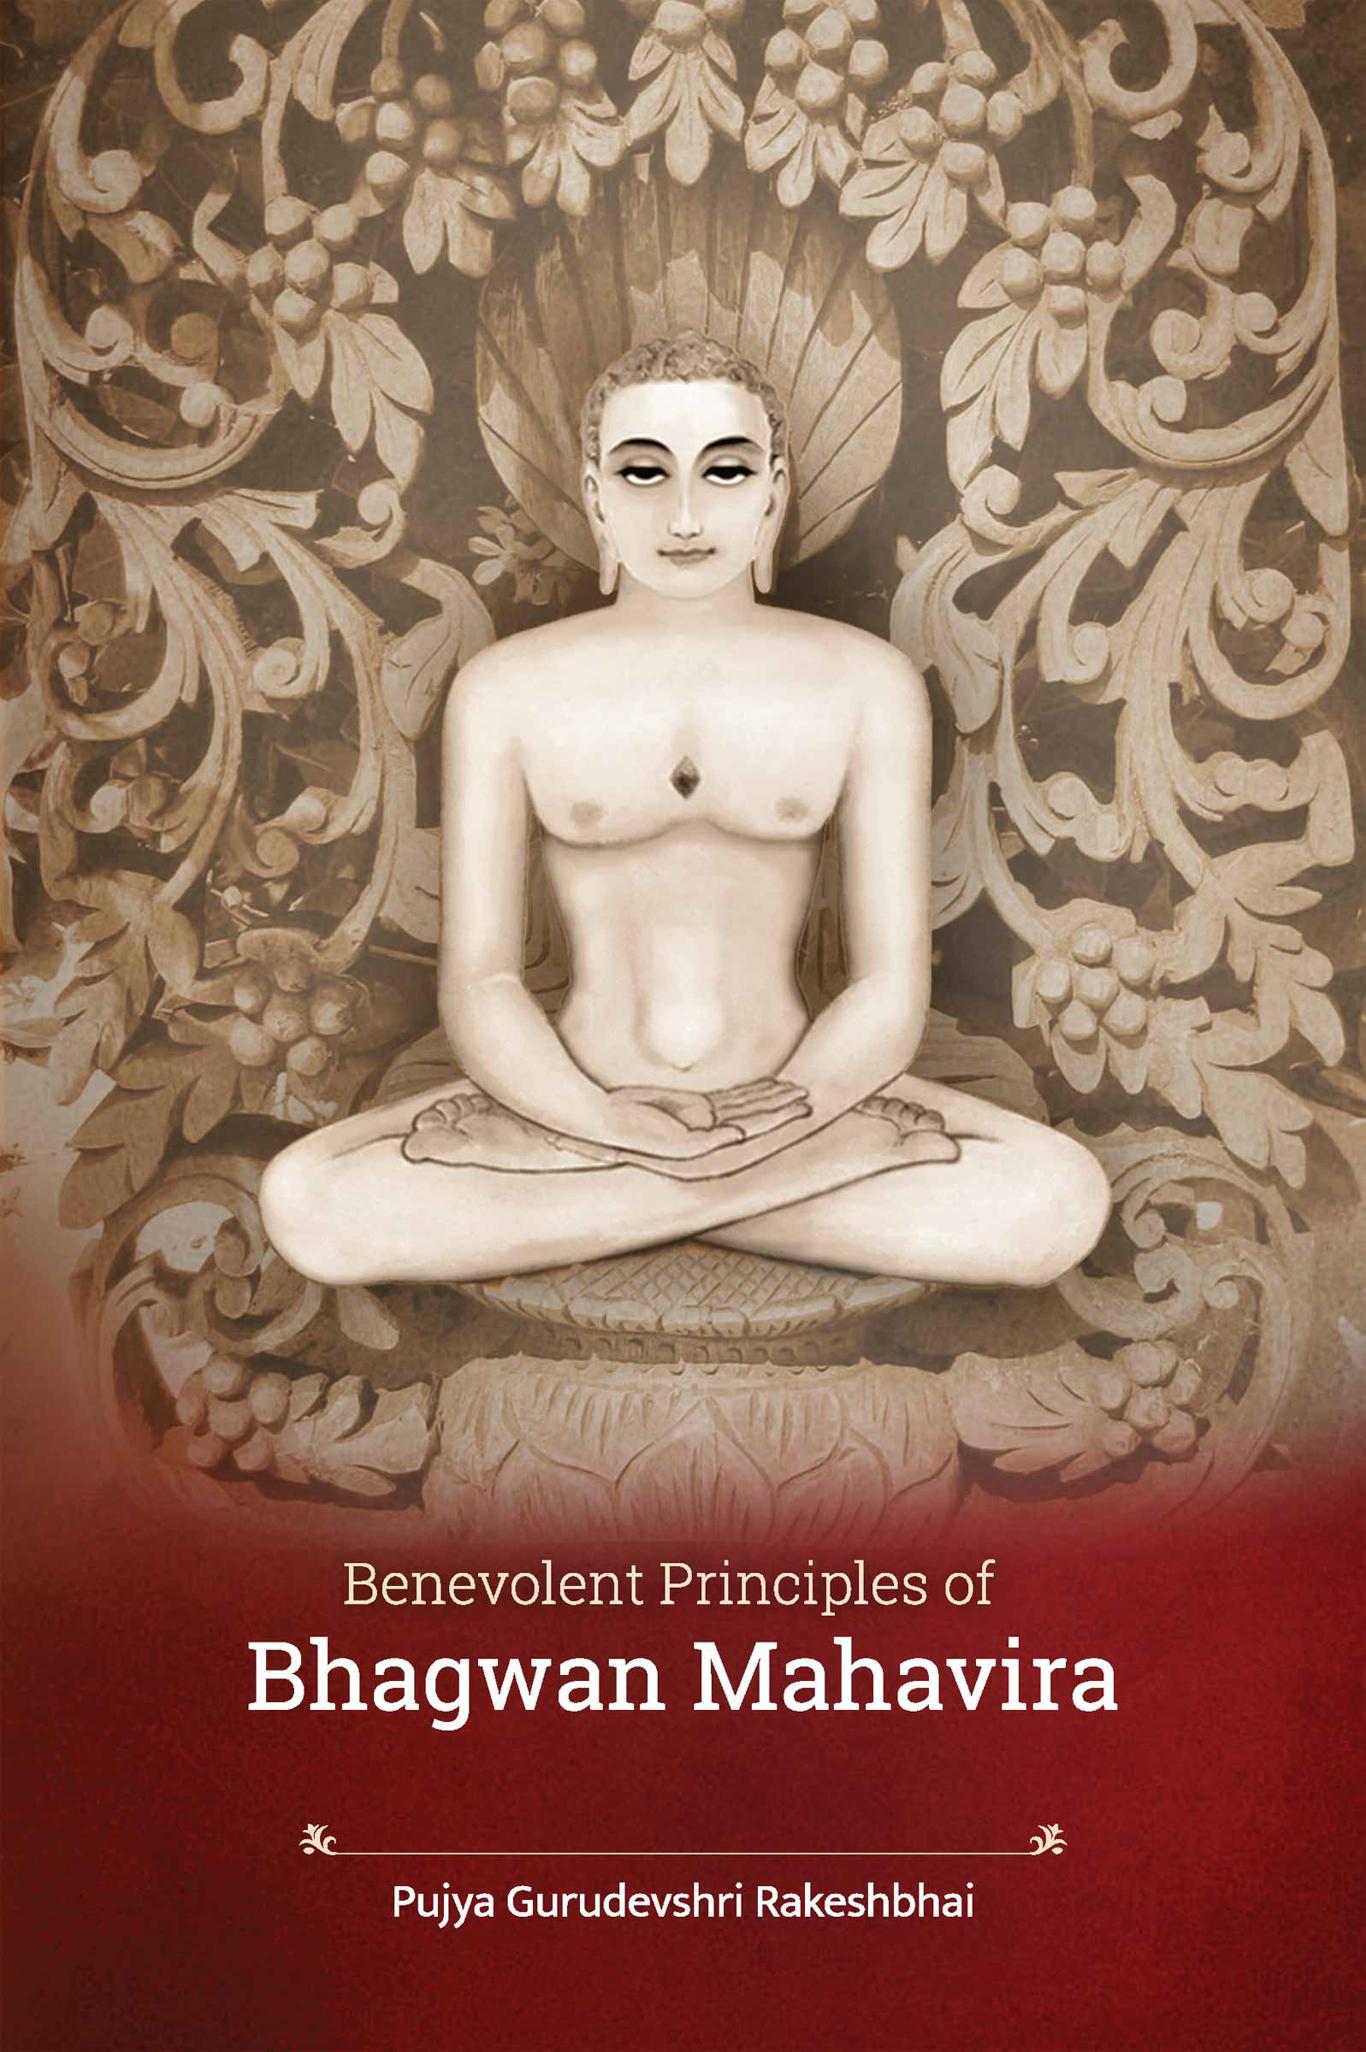 Benevolent Principles of Bhagwan Mahavira